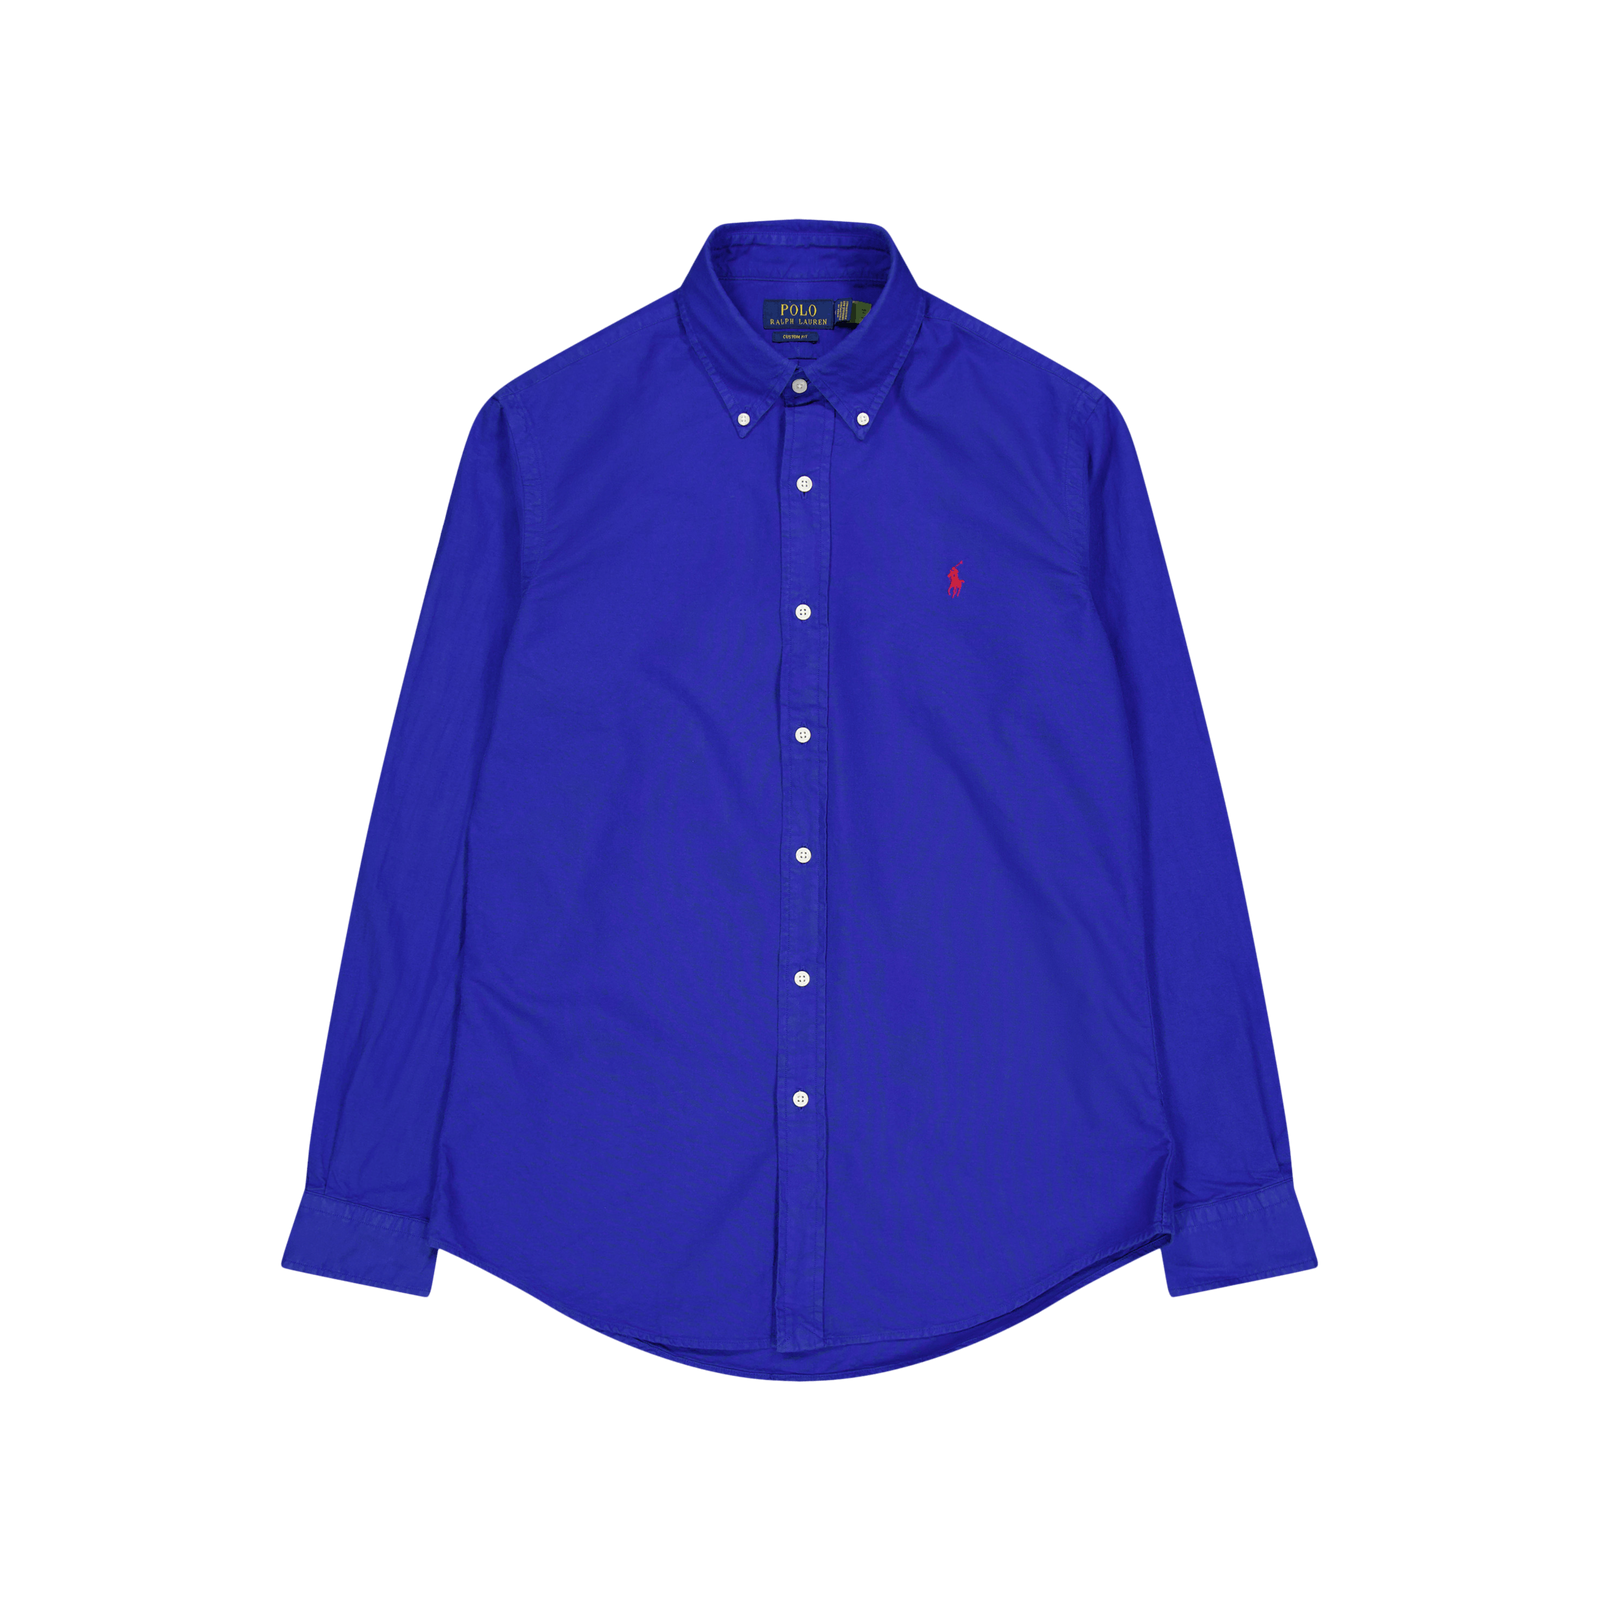 Polo Ralph Lauren Gd Oxford Custom Fit Shirt 048 New Sapphire